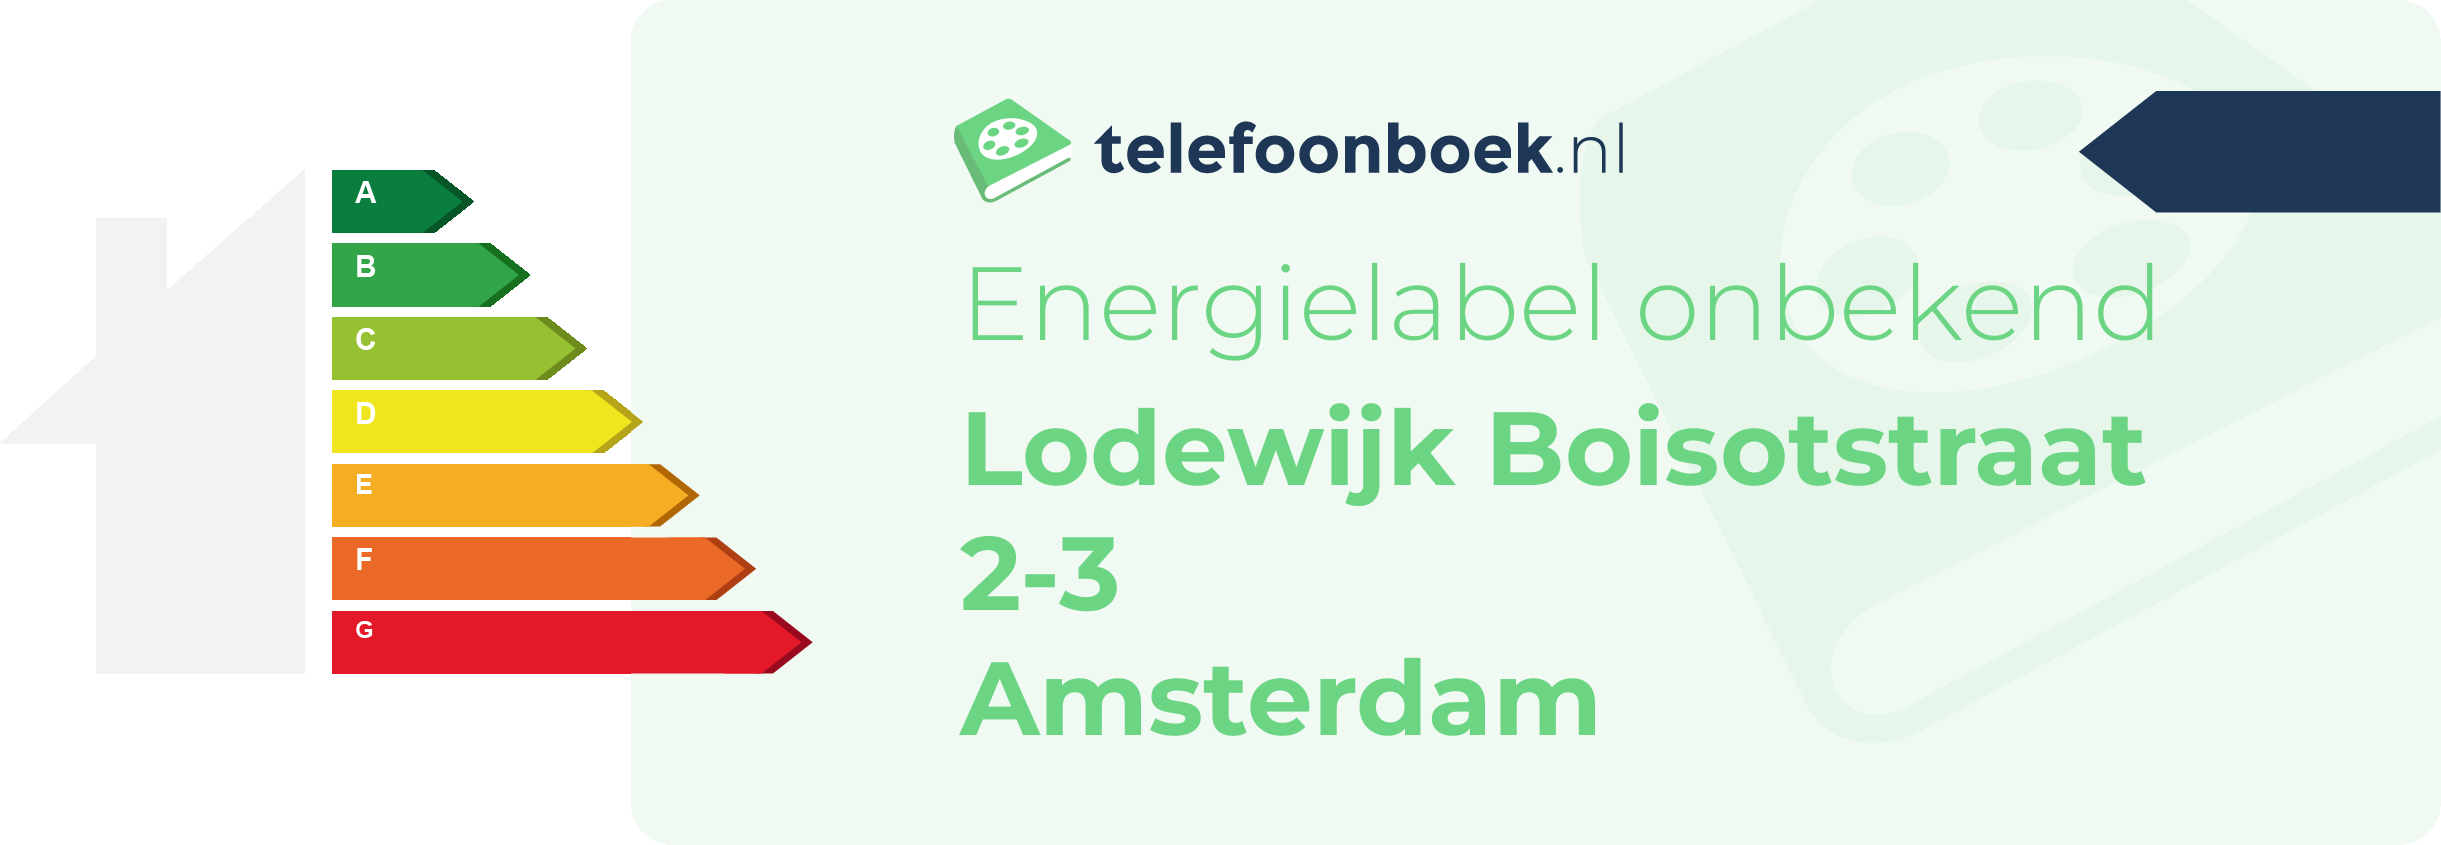 Energielabel Lodewijk Boisotstraat 2-3 Amsterdam